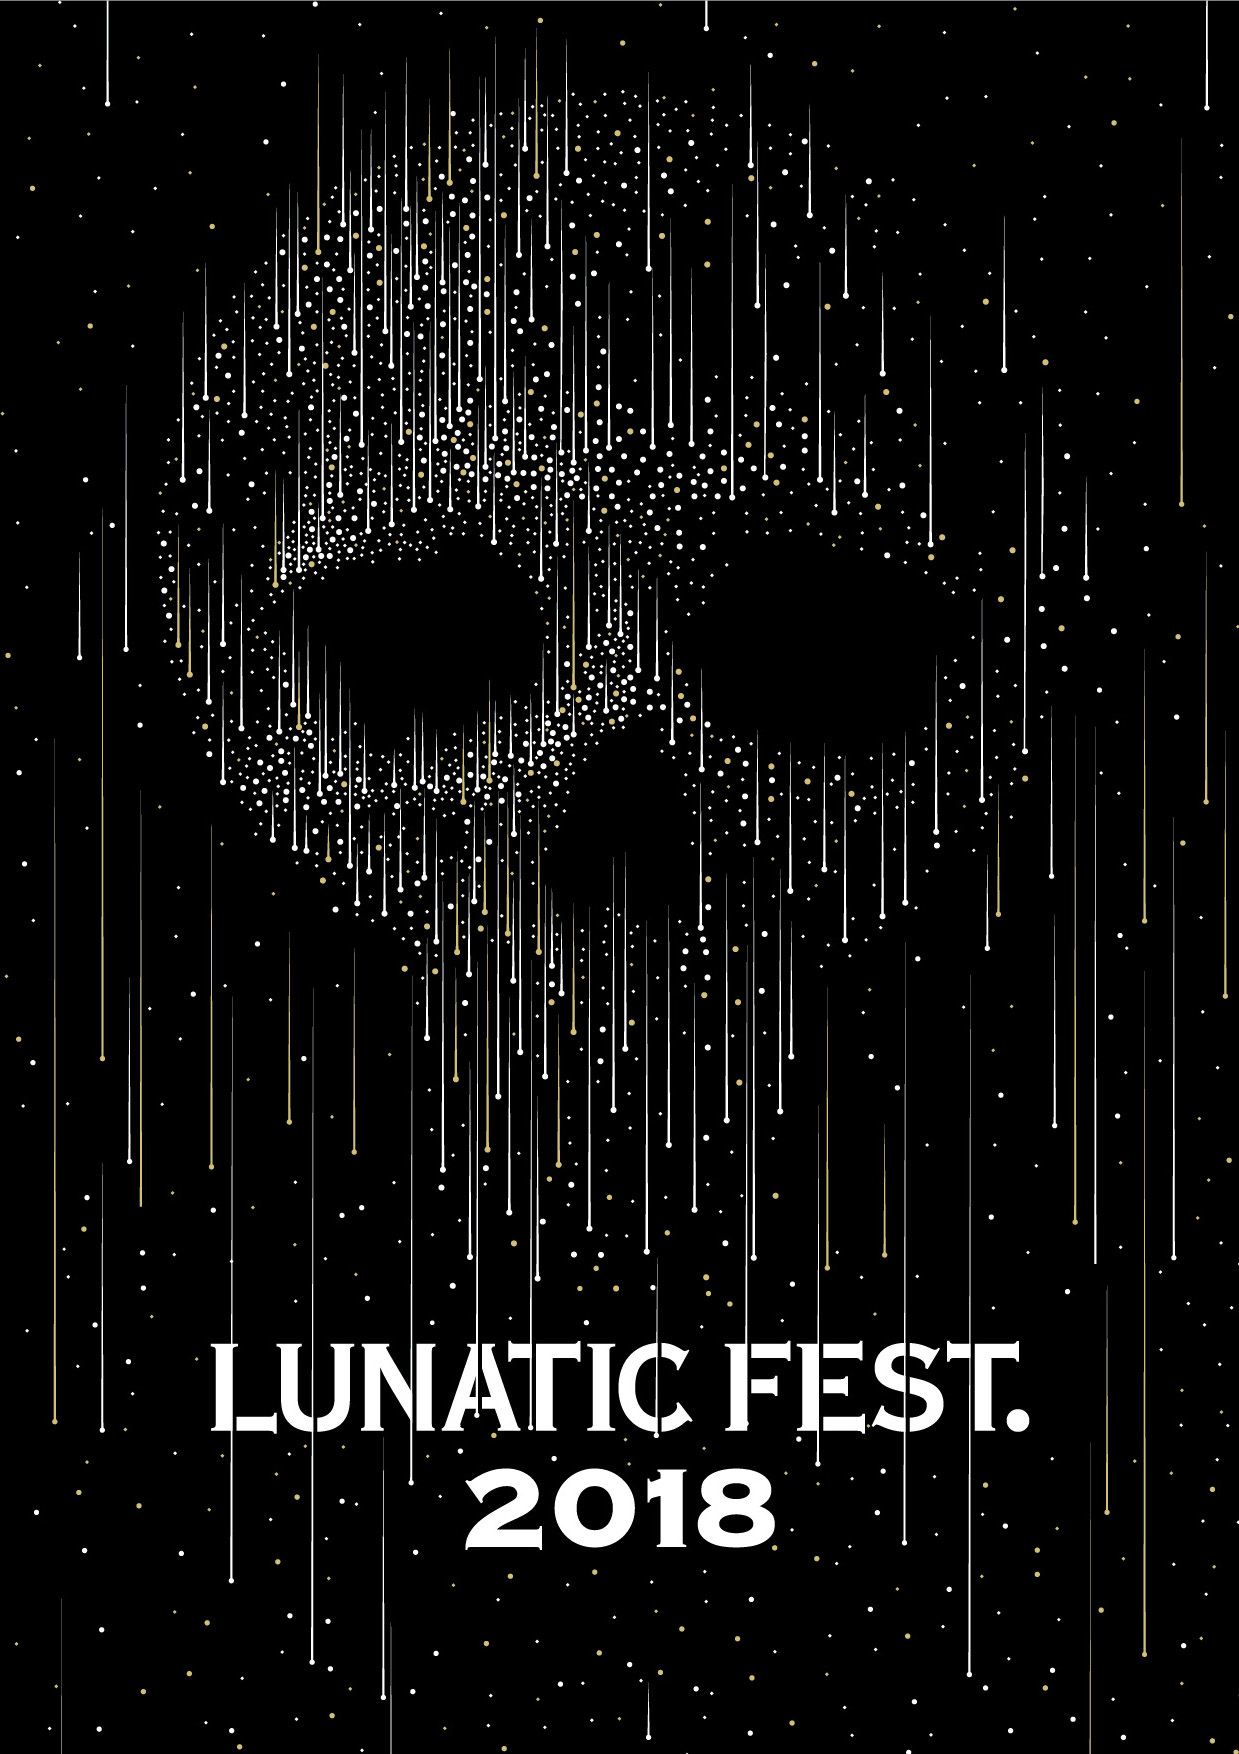 LUNATIC FEST. 2018